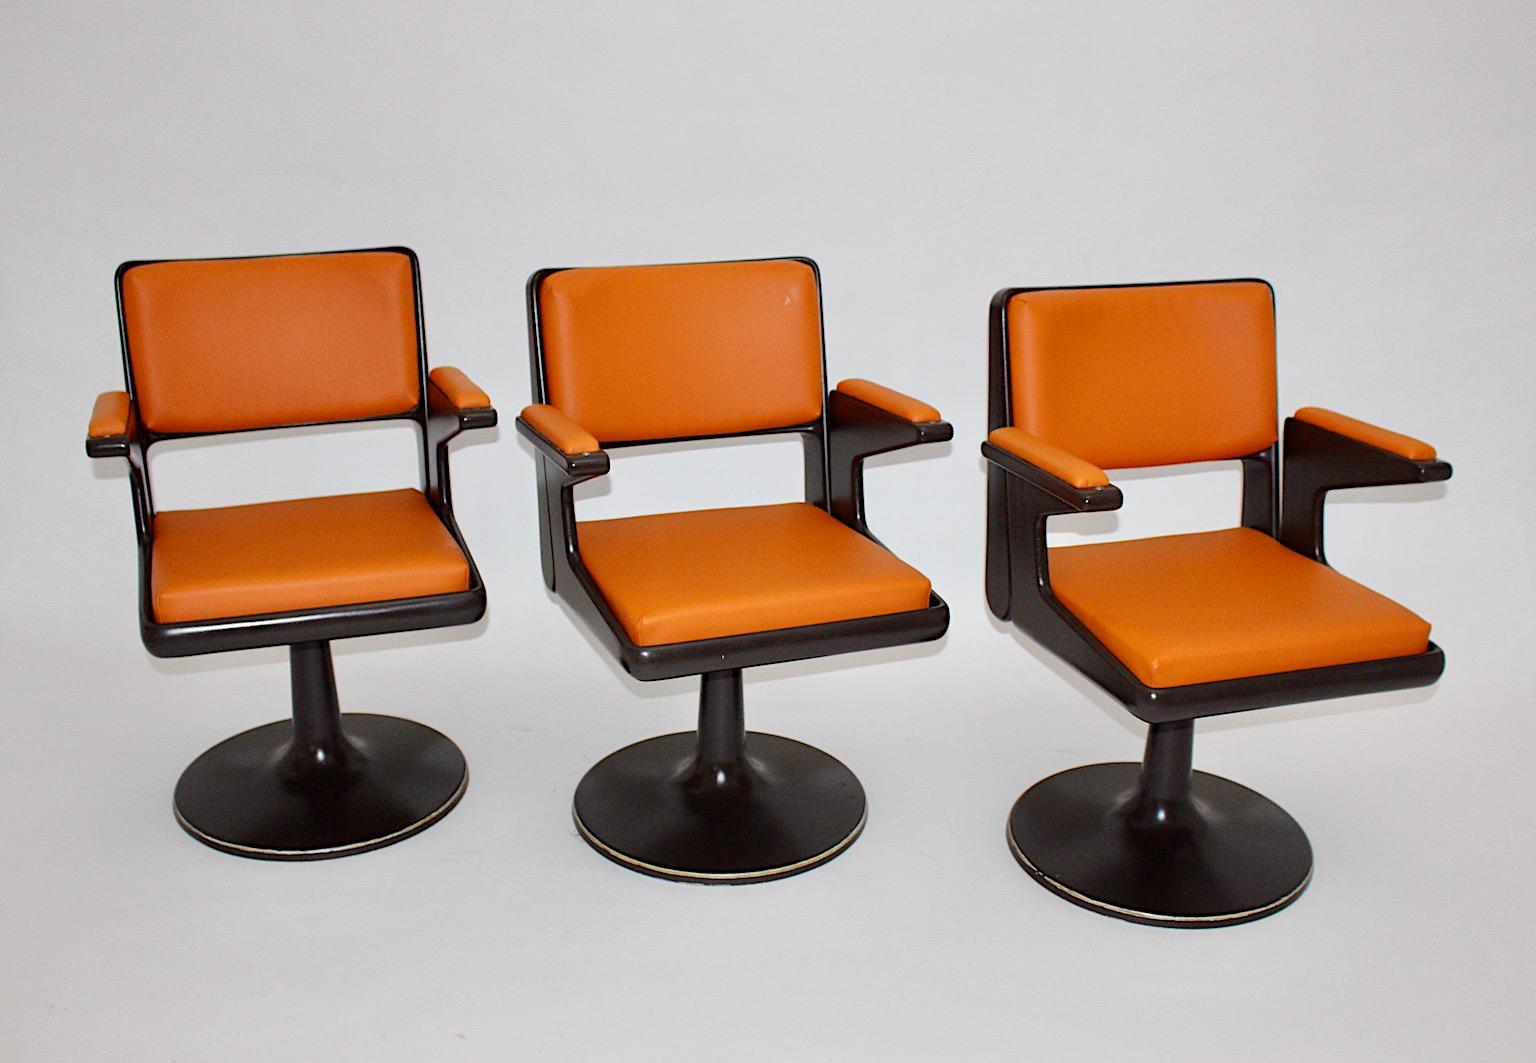 Fauteuil pivotant vintage Space Age en plastique marron et sièges en simili cuir orange produit en Allemagne dans les années 1970.
Alors que les sièges nouvellement recouverts sont en très bon état, le cadre du siège en plastique brun chocolat